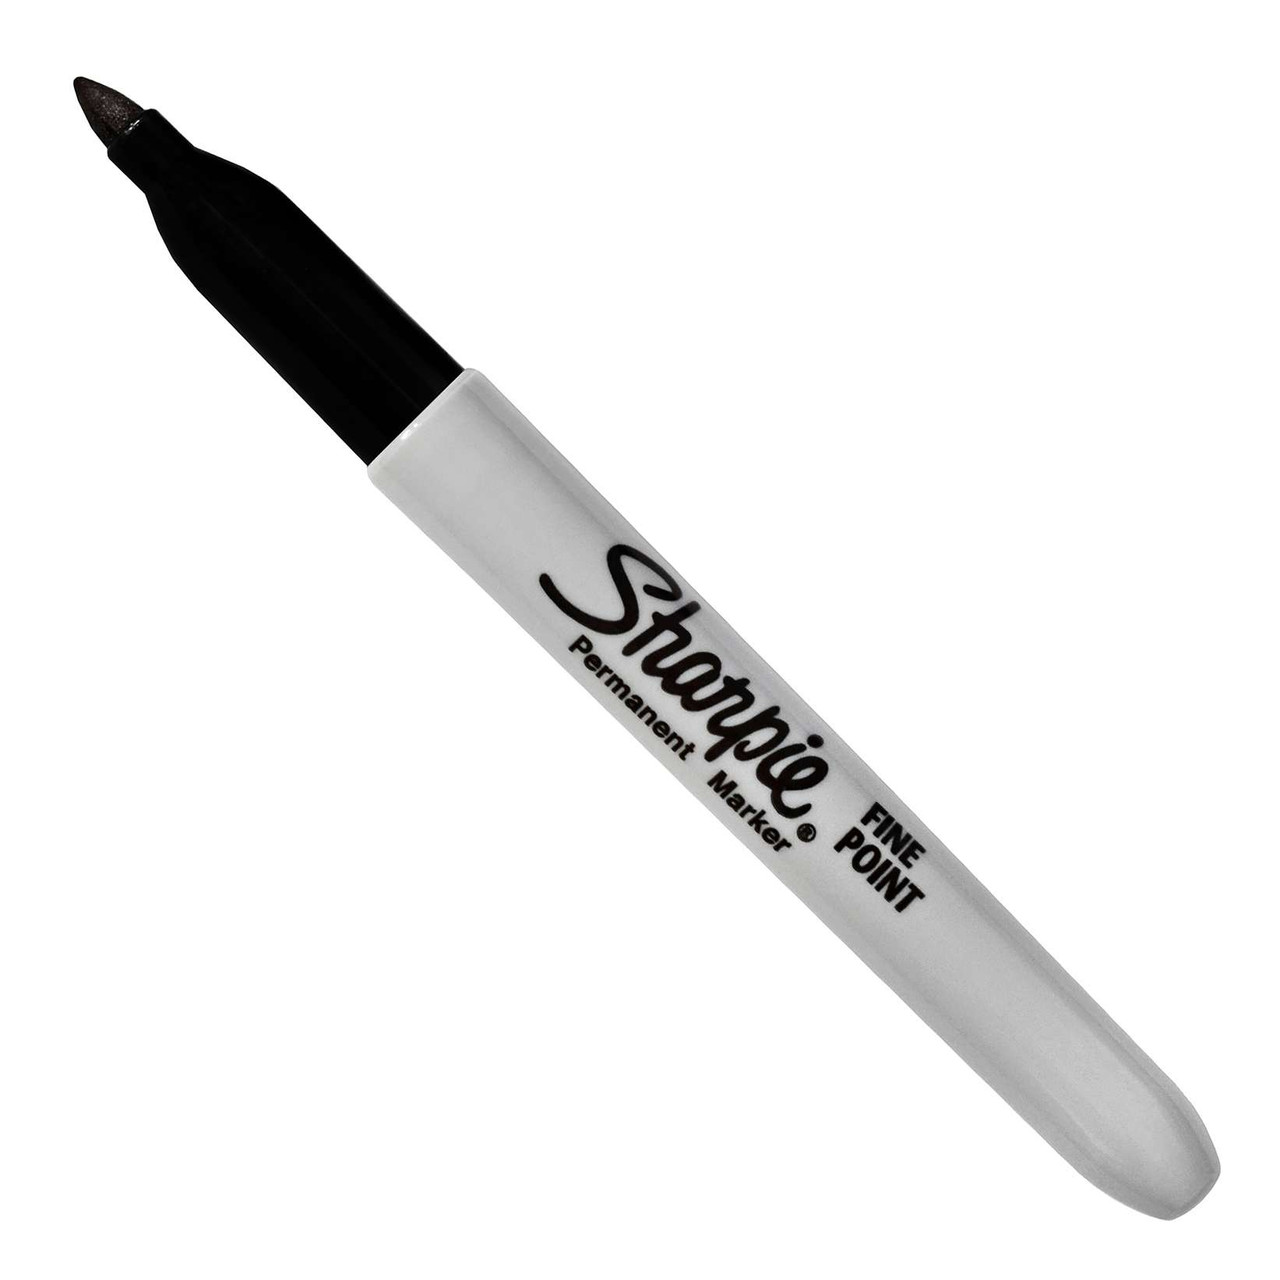 Sharpie Mean Streak Marking Stick Broad Tip White